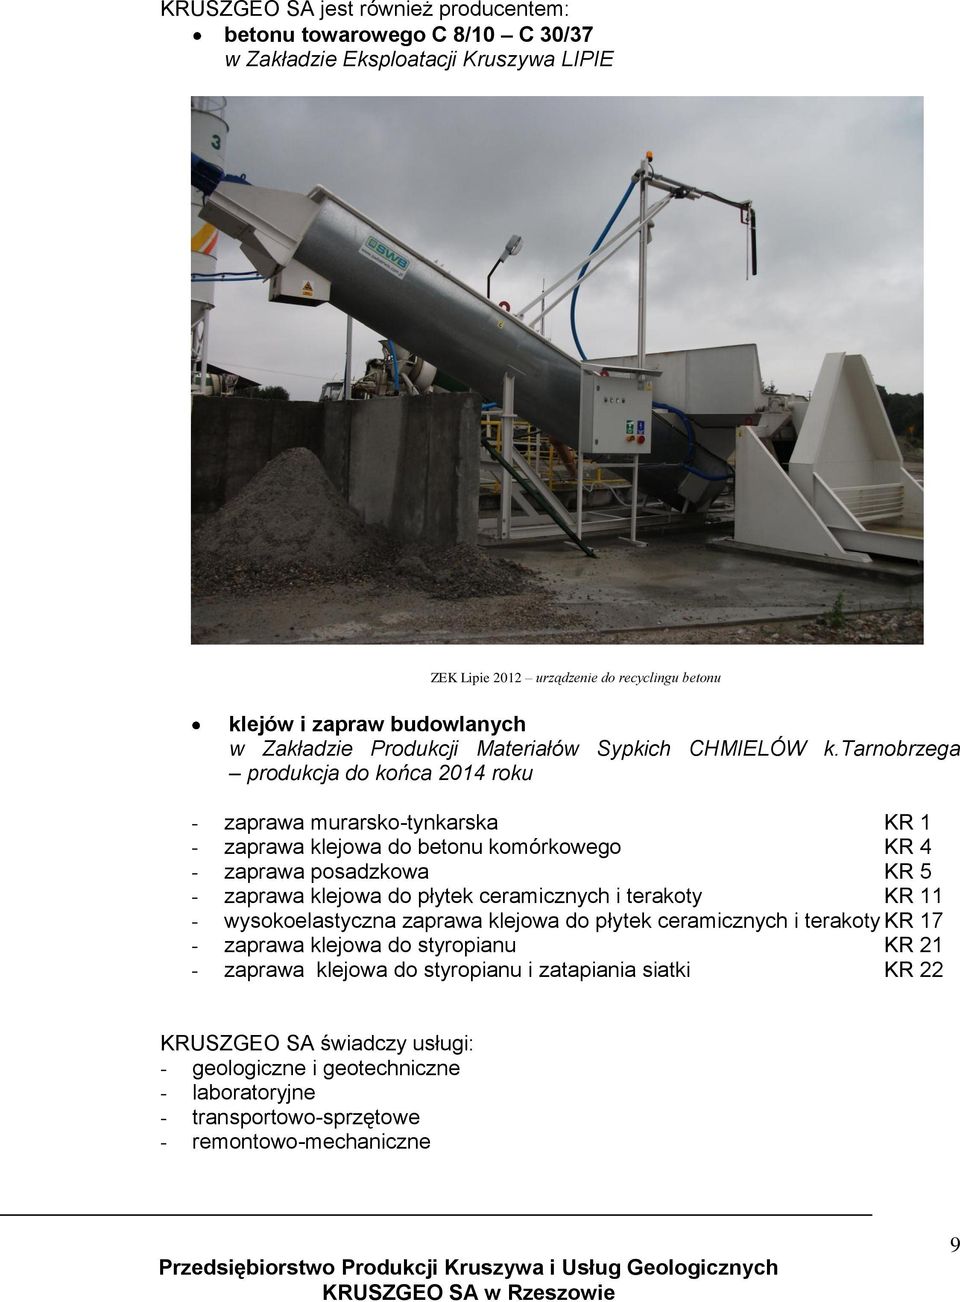 tarnobrzega produkcja do końca 2014 roku - zaprawa murarsko-tynkarska KR 1 - zaprawa klejowa do betonu komórkowego KR 4 - zaprawa posadzkowa KR 5 - zaprawa klejowa do płytek